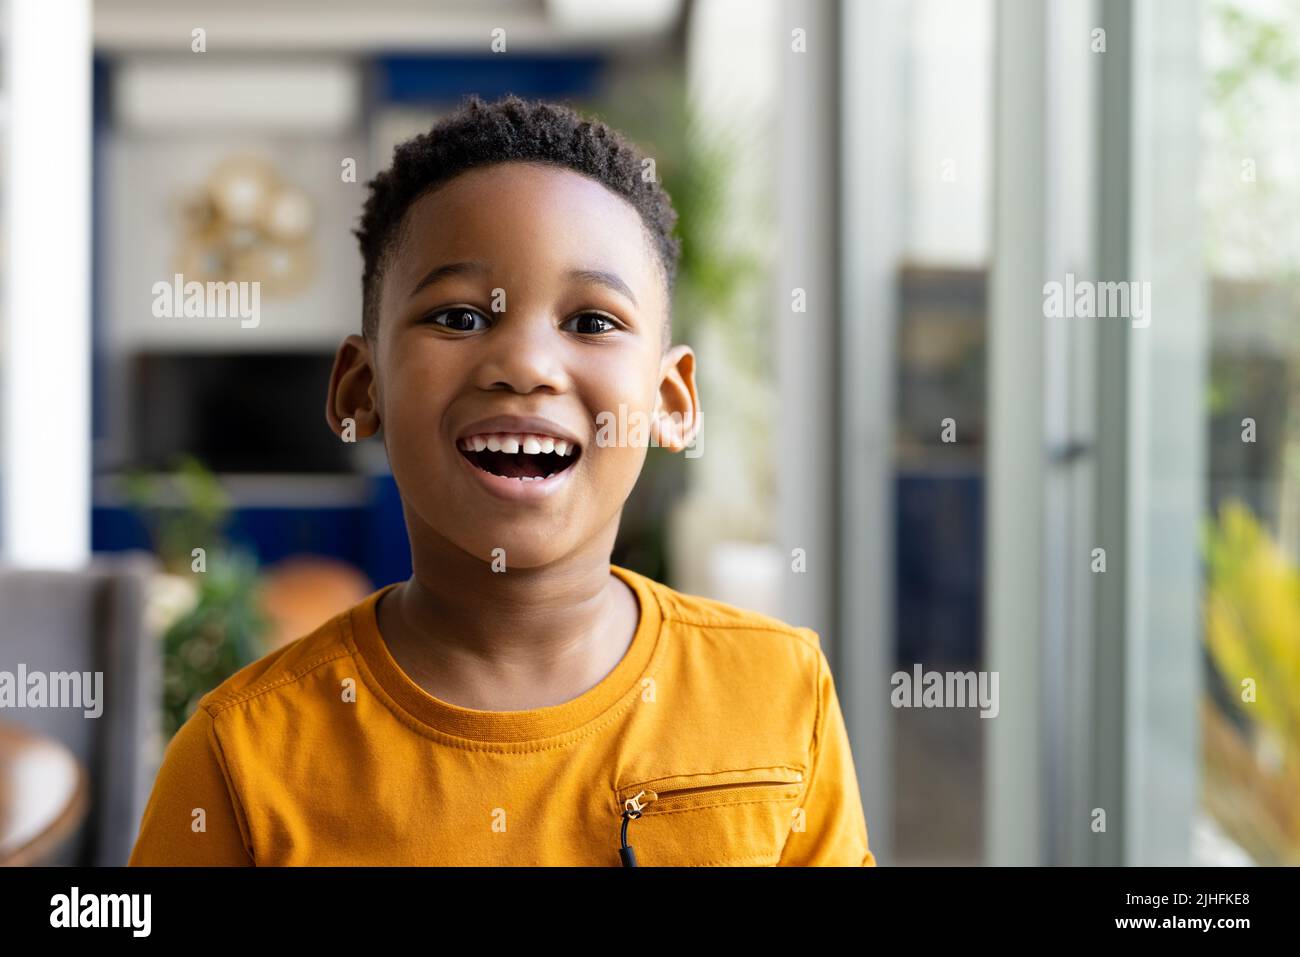 Image d'un garçon afro-américain souriant en utilisant la langue des signes Banque D'Images